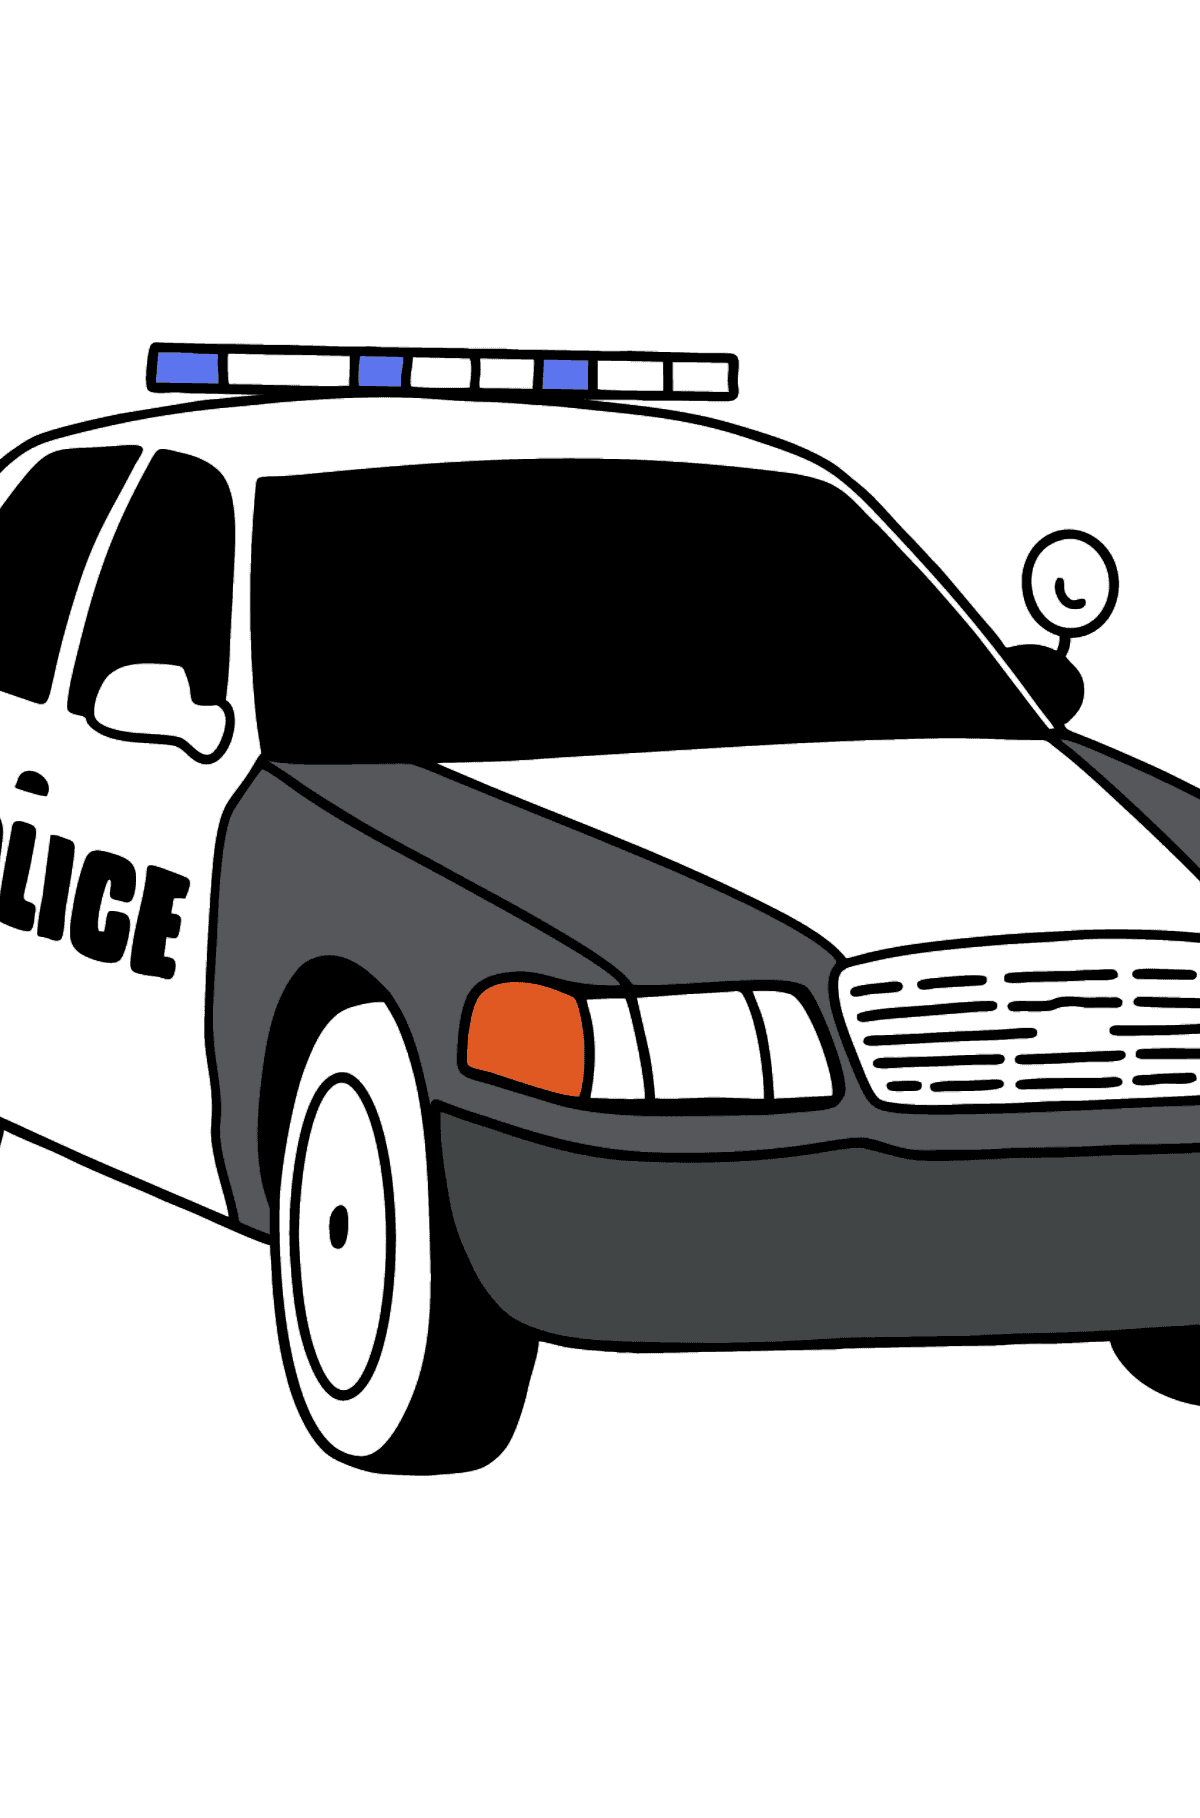 Boyama sayfası USA polis arabası - Boyamalar çocuklar için